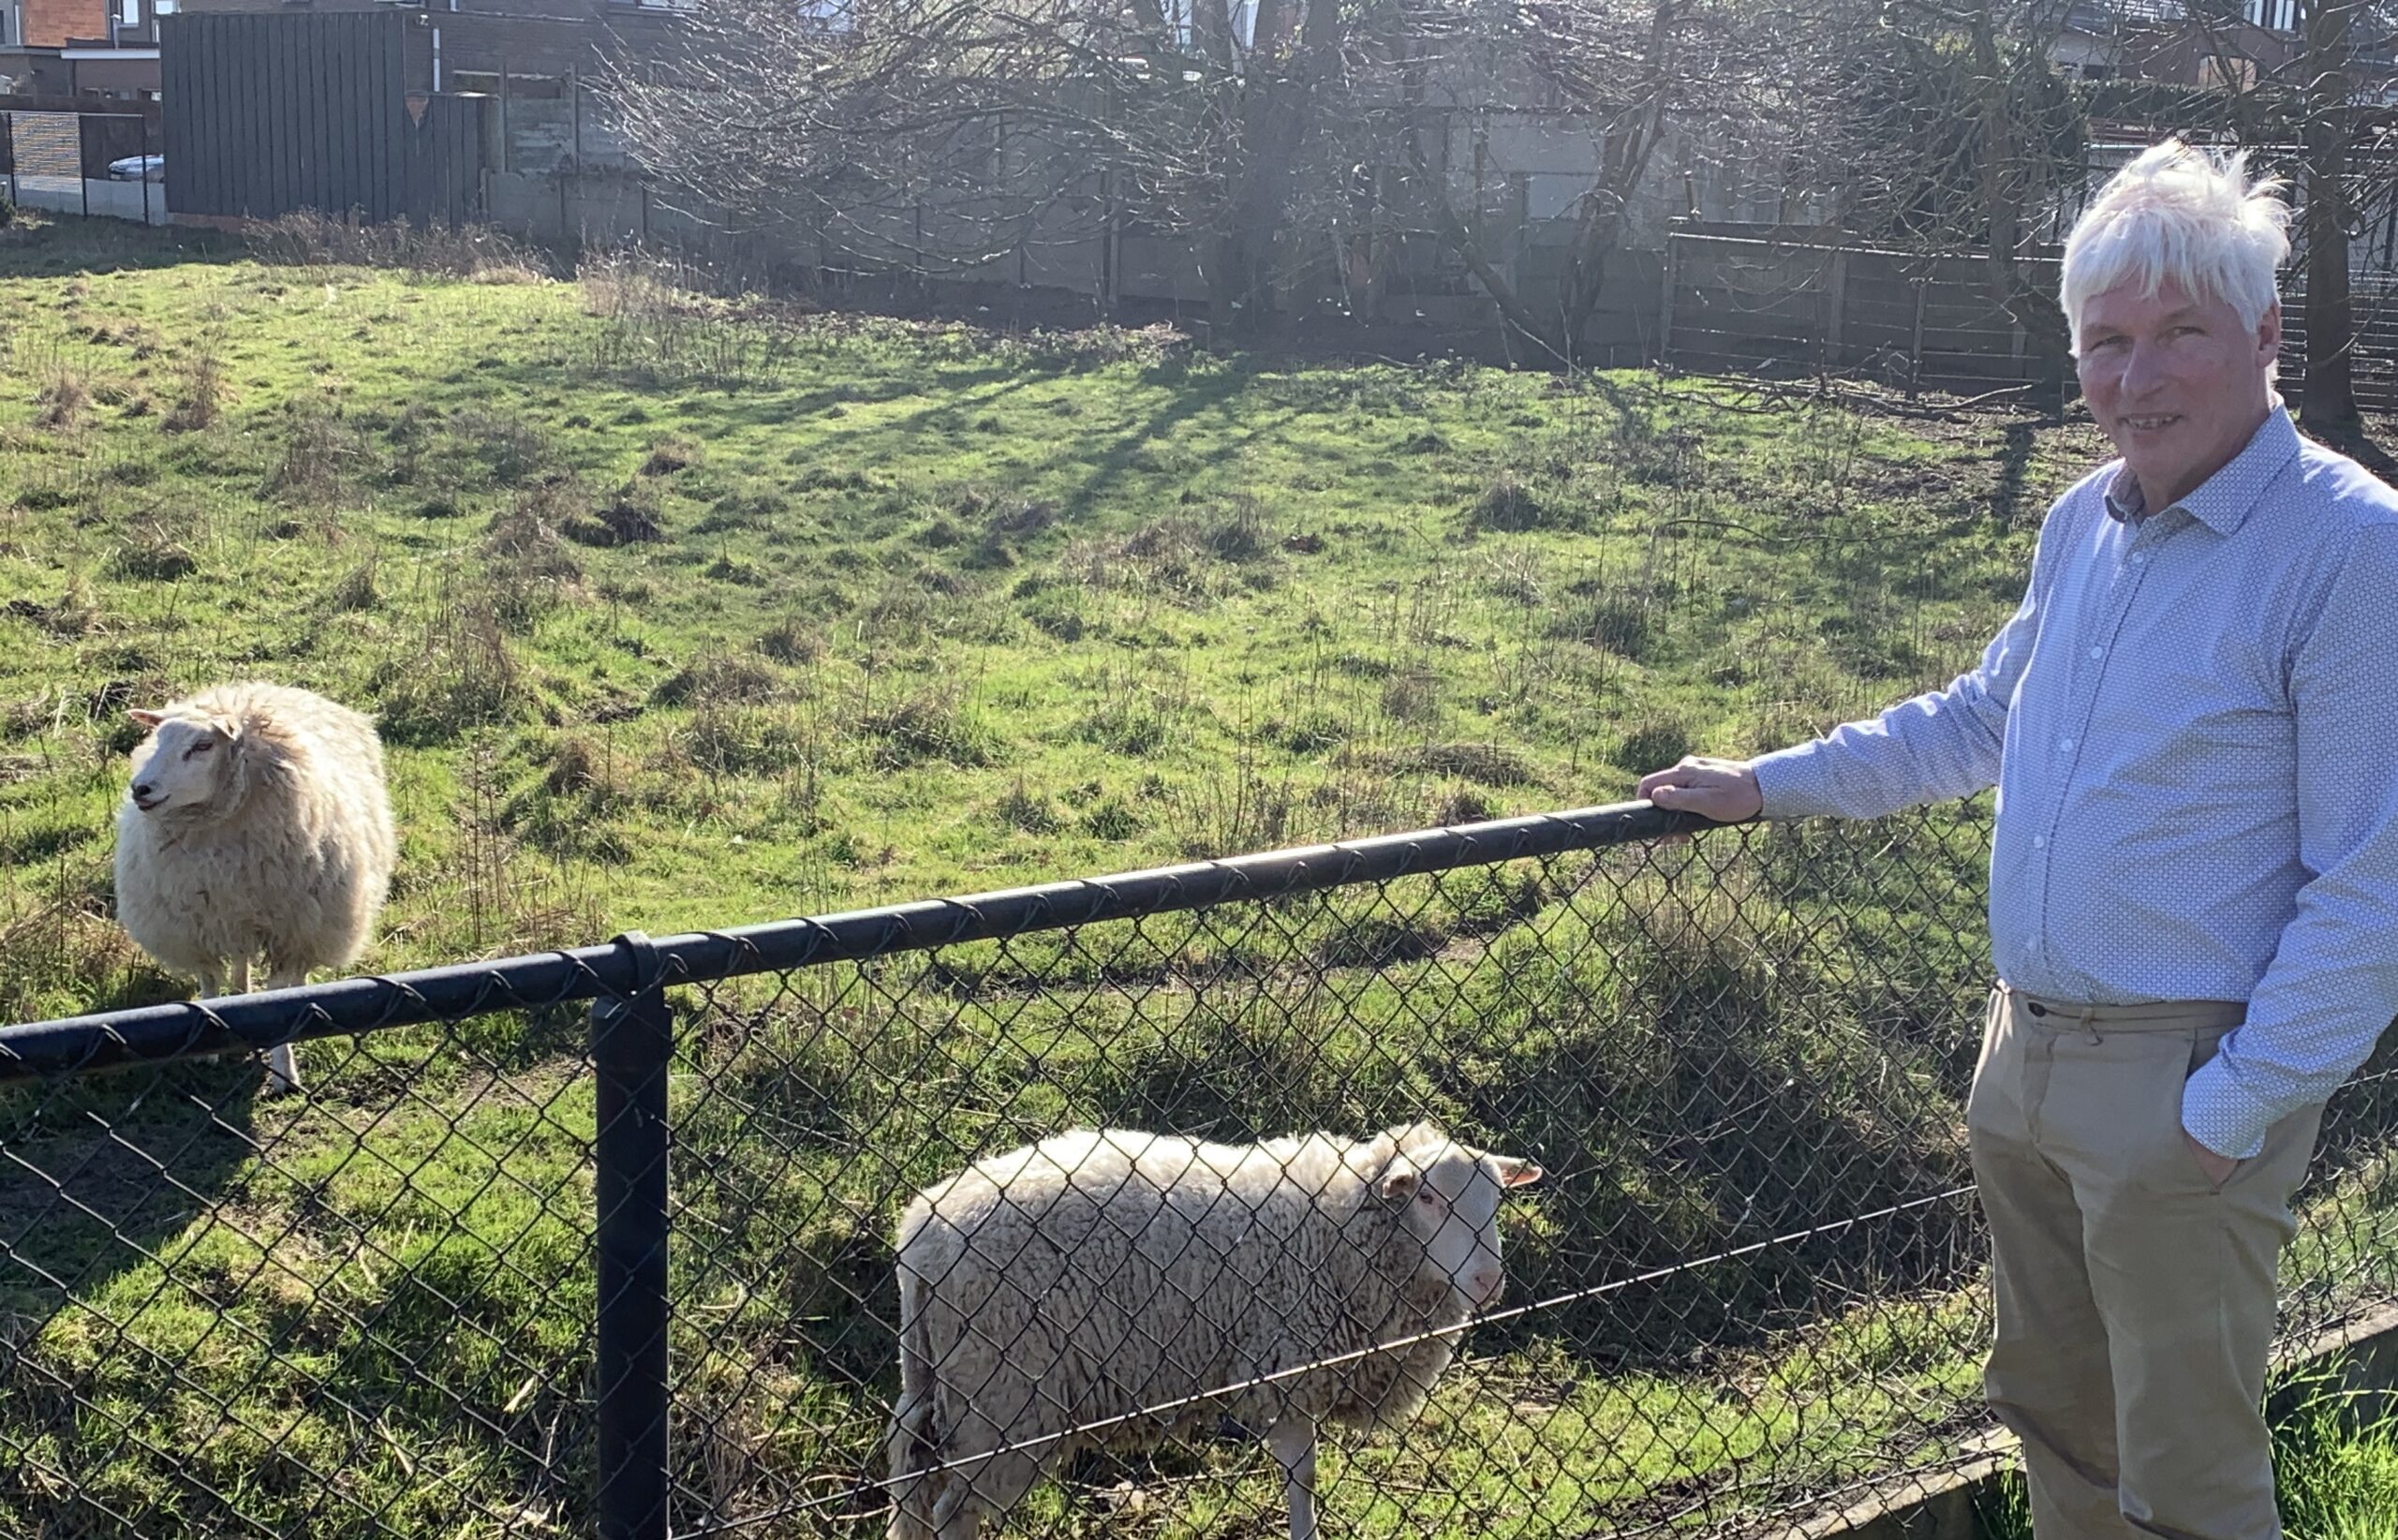 Bart Smits ruilt job als financieel directeur in voor zorg voor schapen